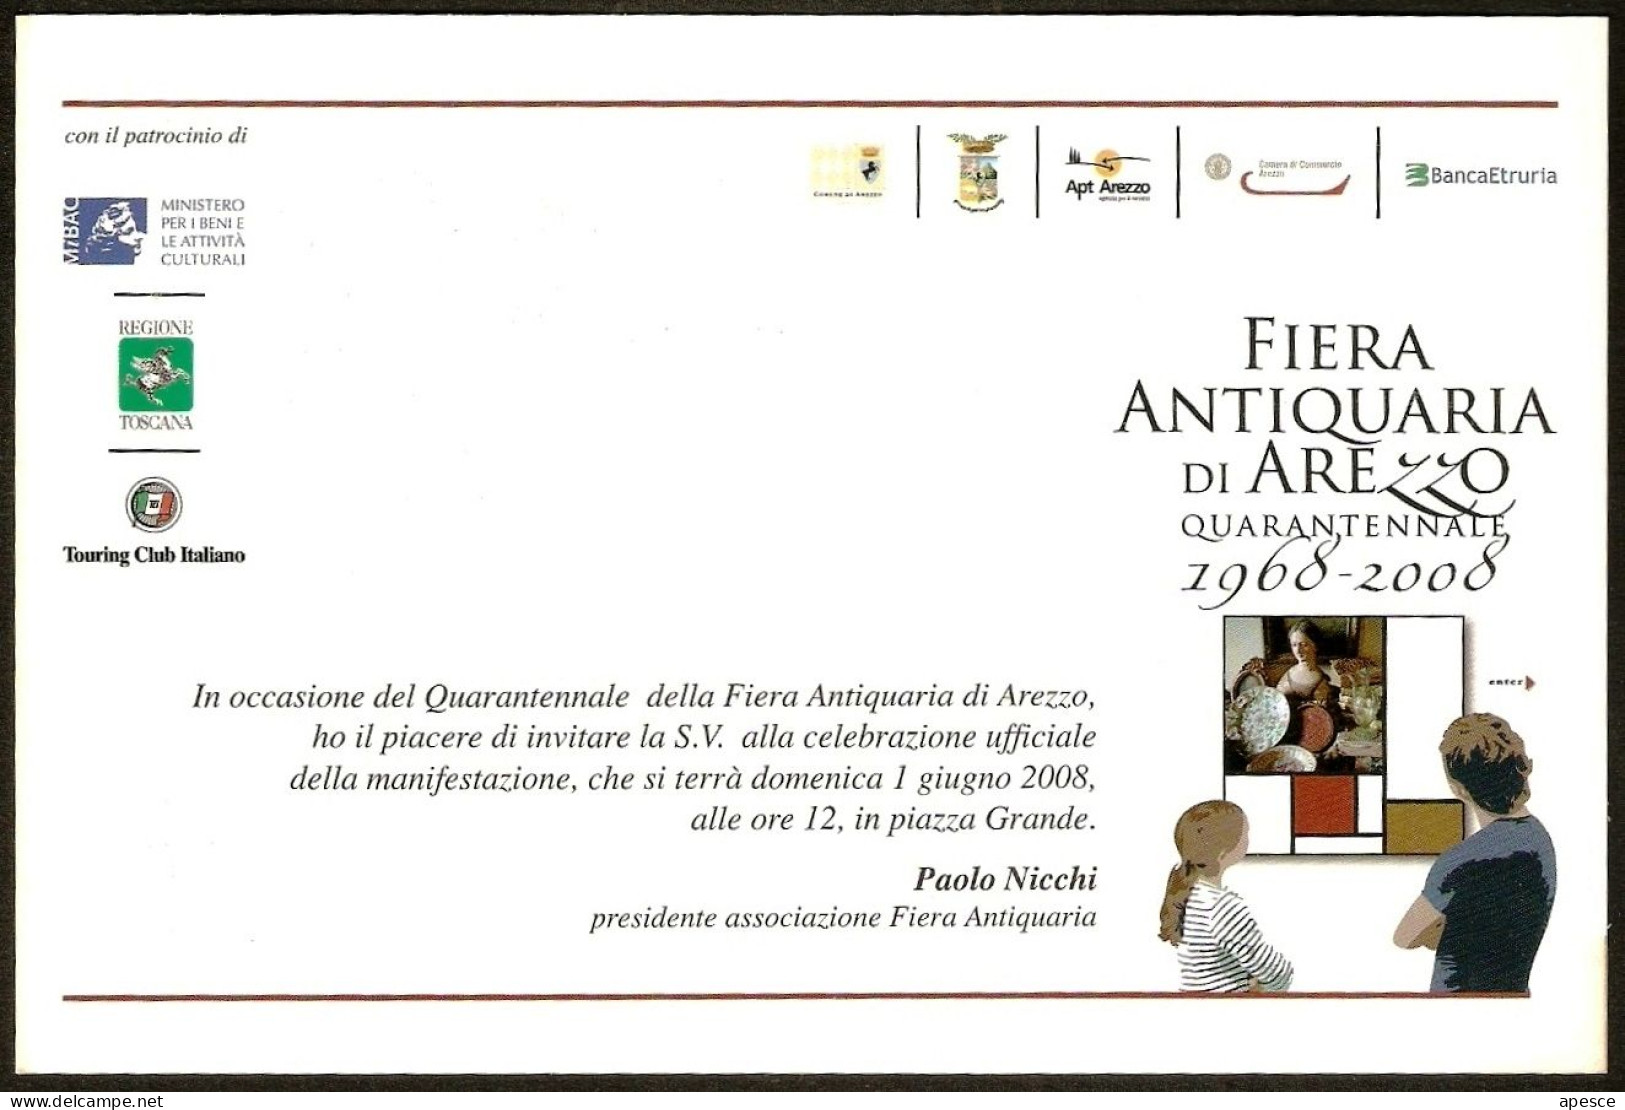 ITALIA - FIERA ANTIQUARIA DI AREZZO - QUARANTENNALE - 1968/2008 - CARTOLINA INVITO MANIFESTAZIONE - I - Mercati